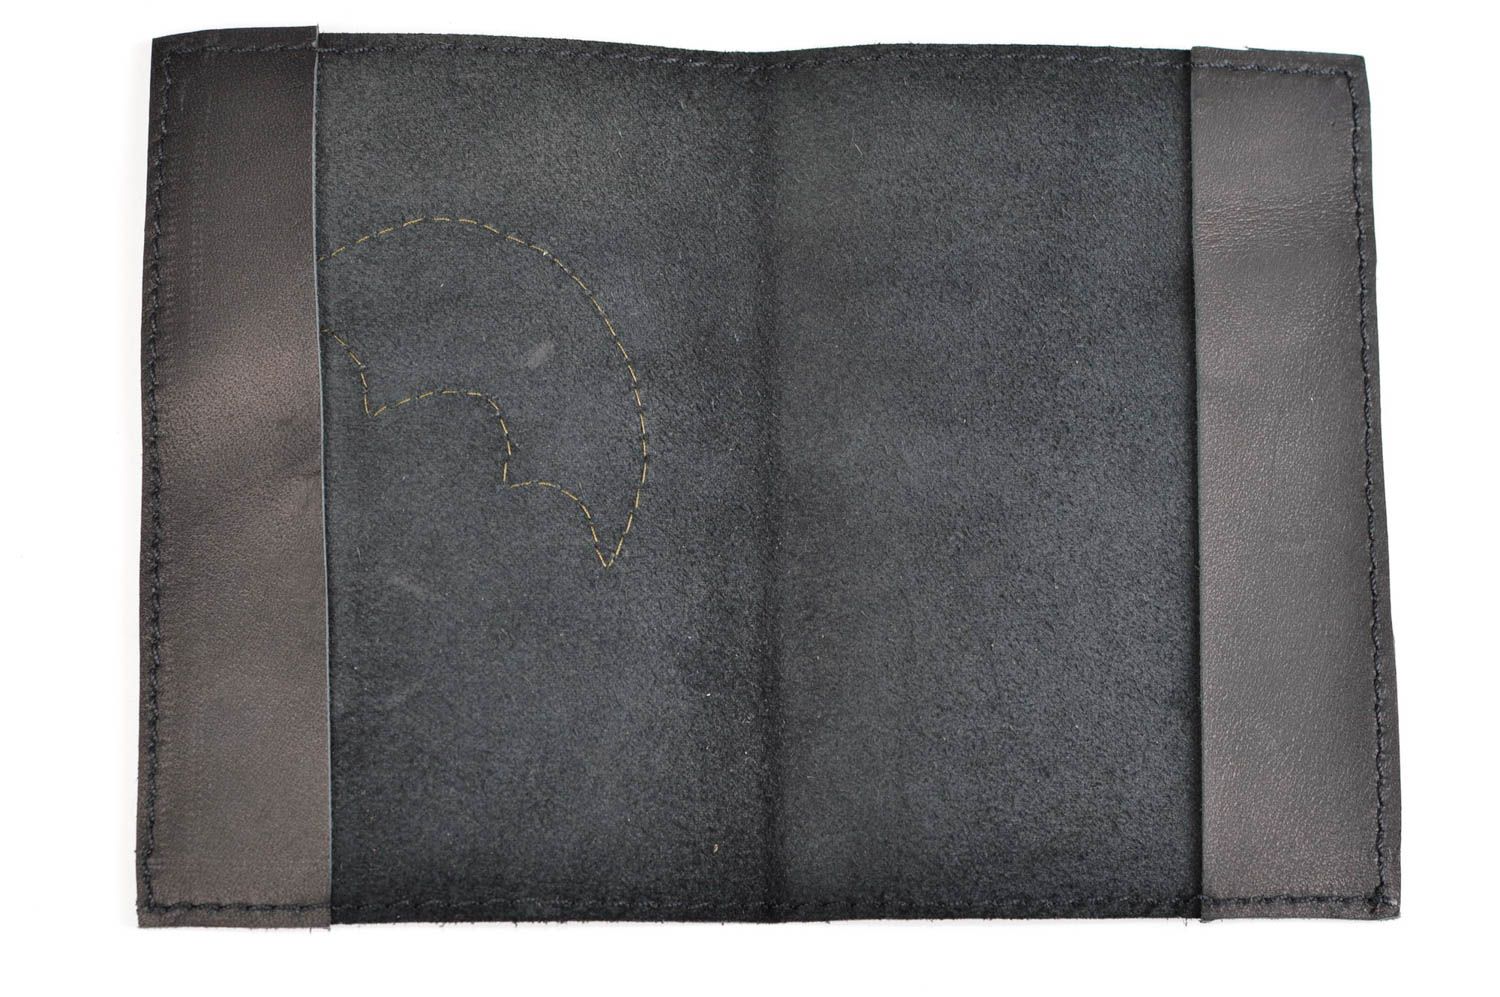 Оригинальный подарок хэнд мейд кожаная обложка Зонт и радуга обложка на паспорт фото 8